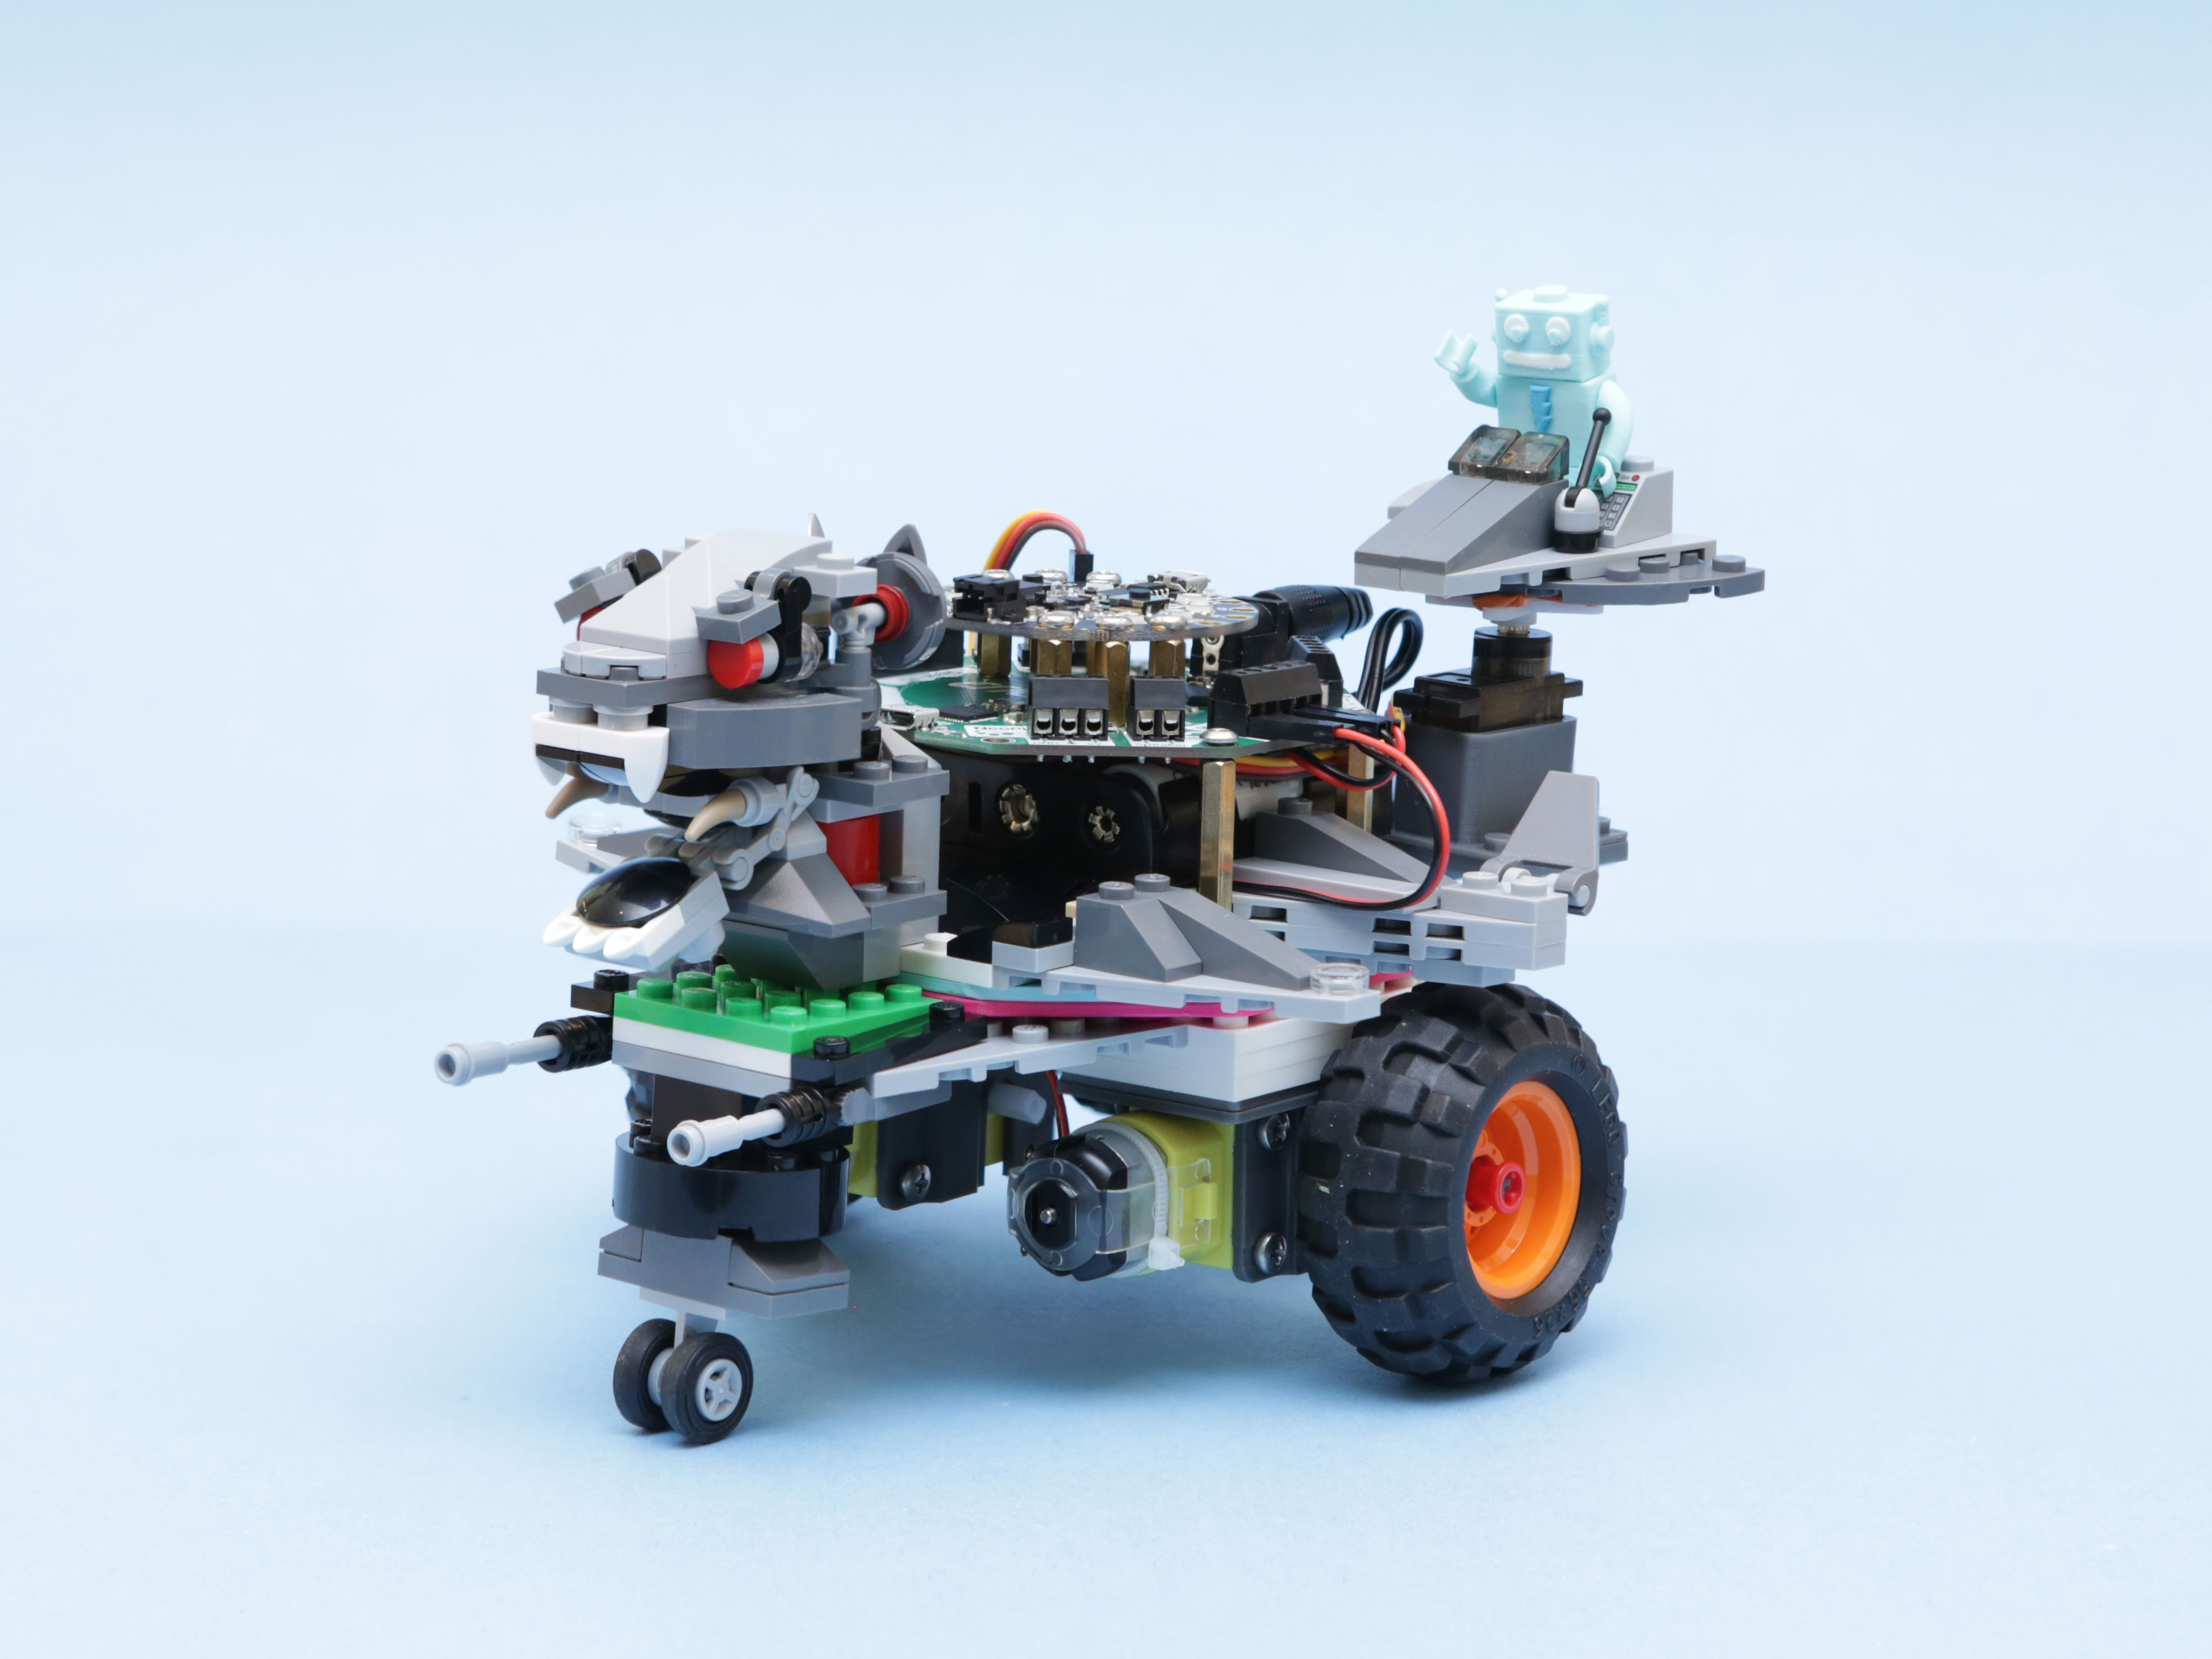 CRICKIT Lego Rover